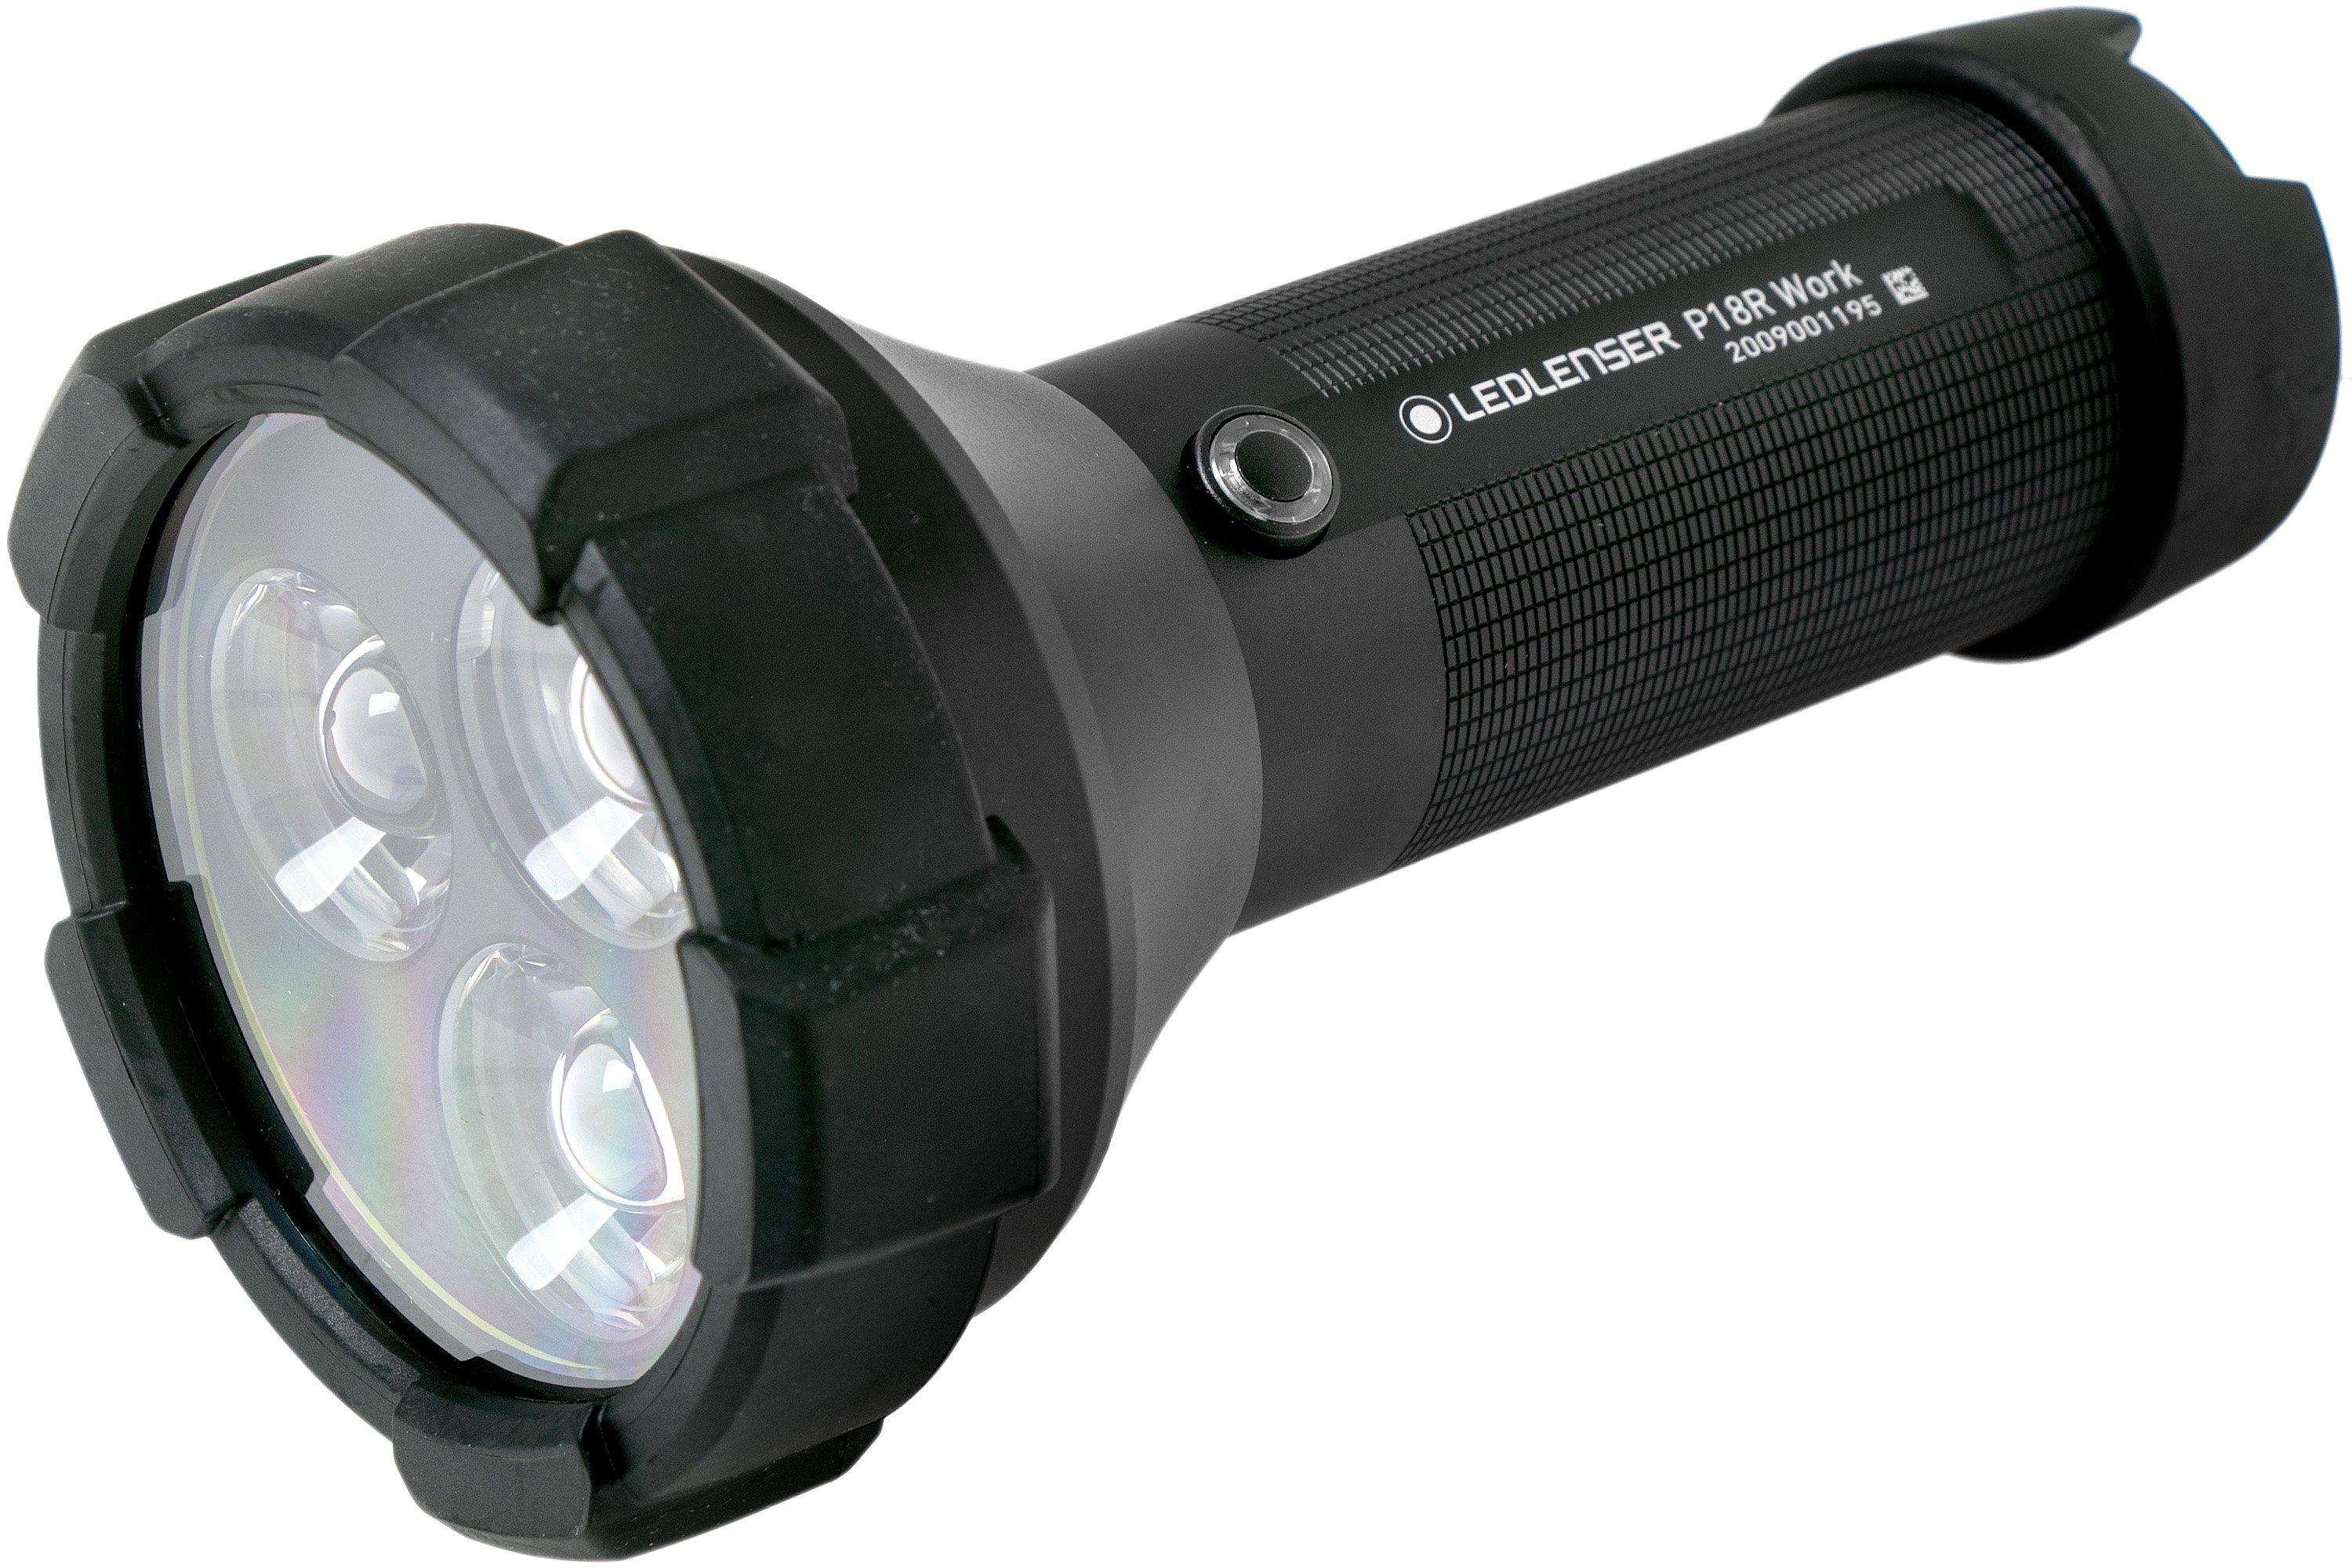 at tiltrække Slid dagbog Ledlenser P18R Work rechargeable flashlight, 4500 lumens | Advantageously  shopping at Knivesandtools.com